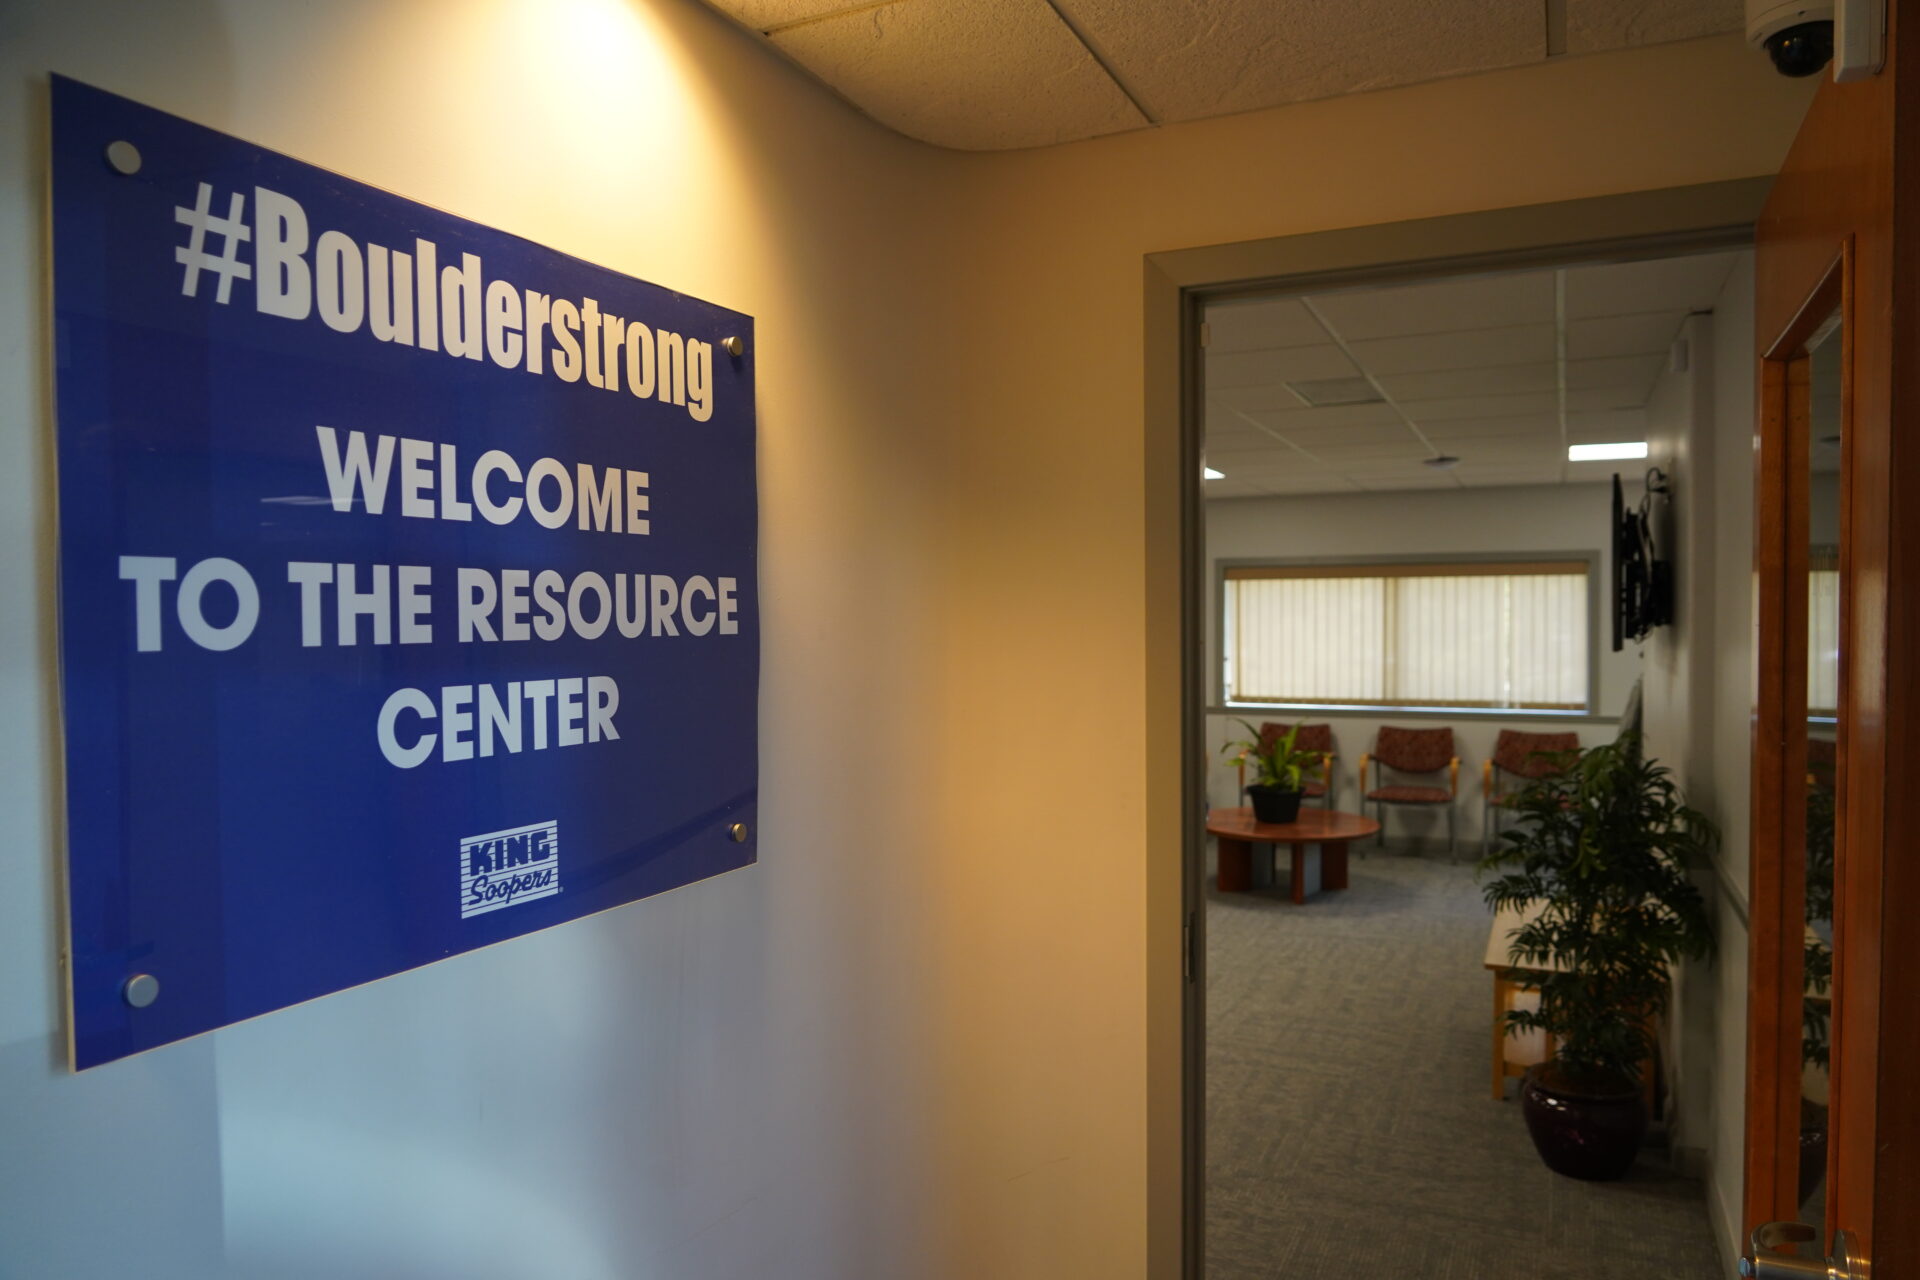 #Boulderstrong Resource Center